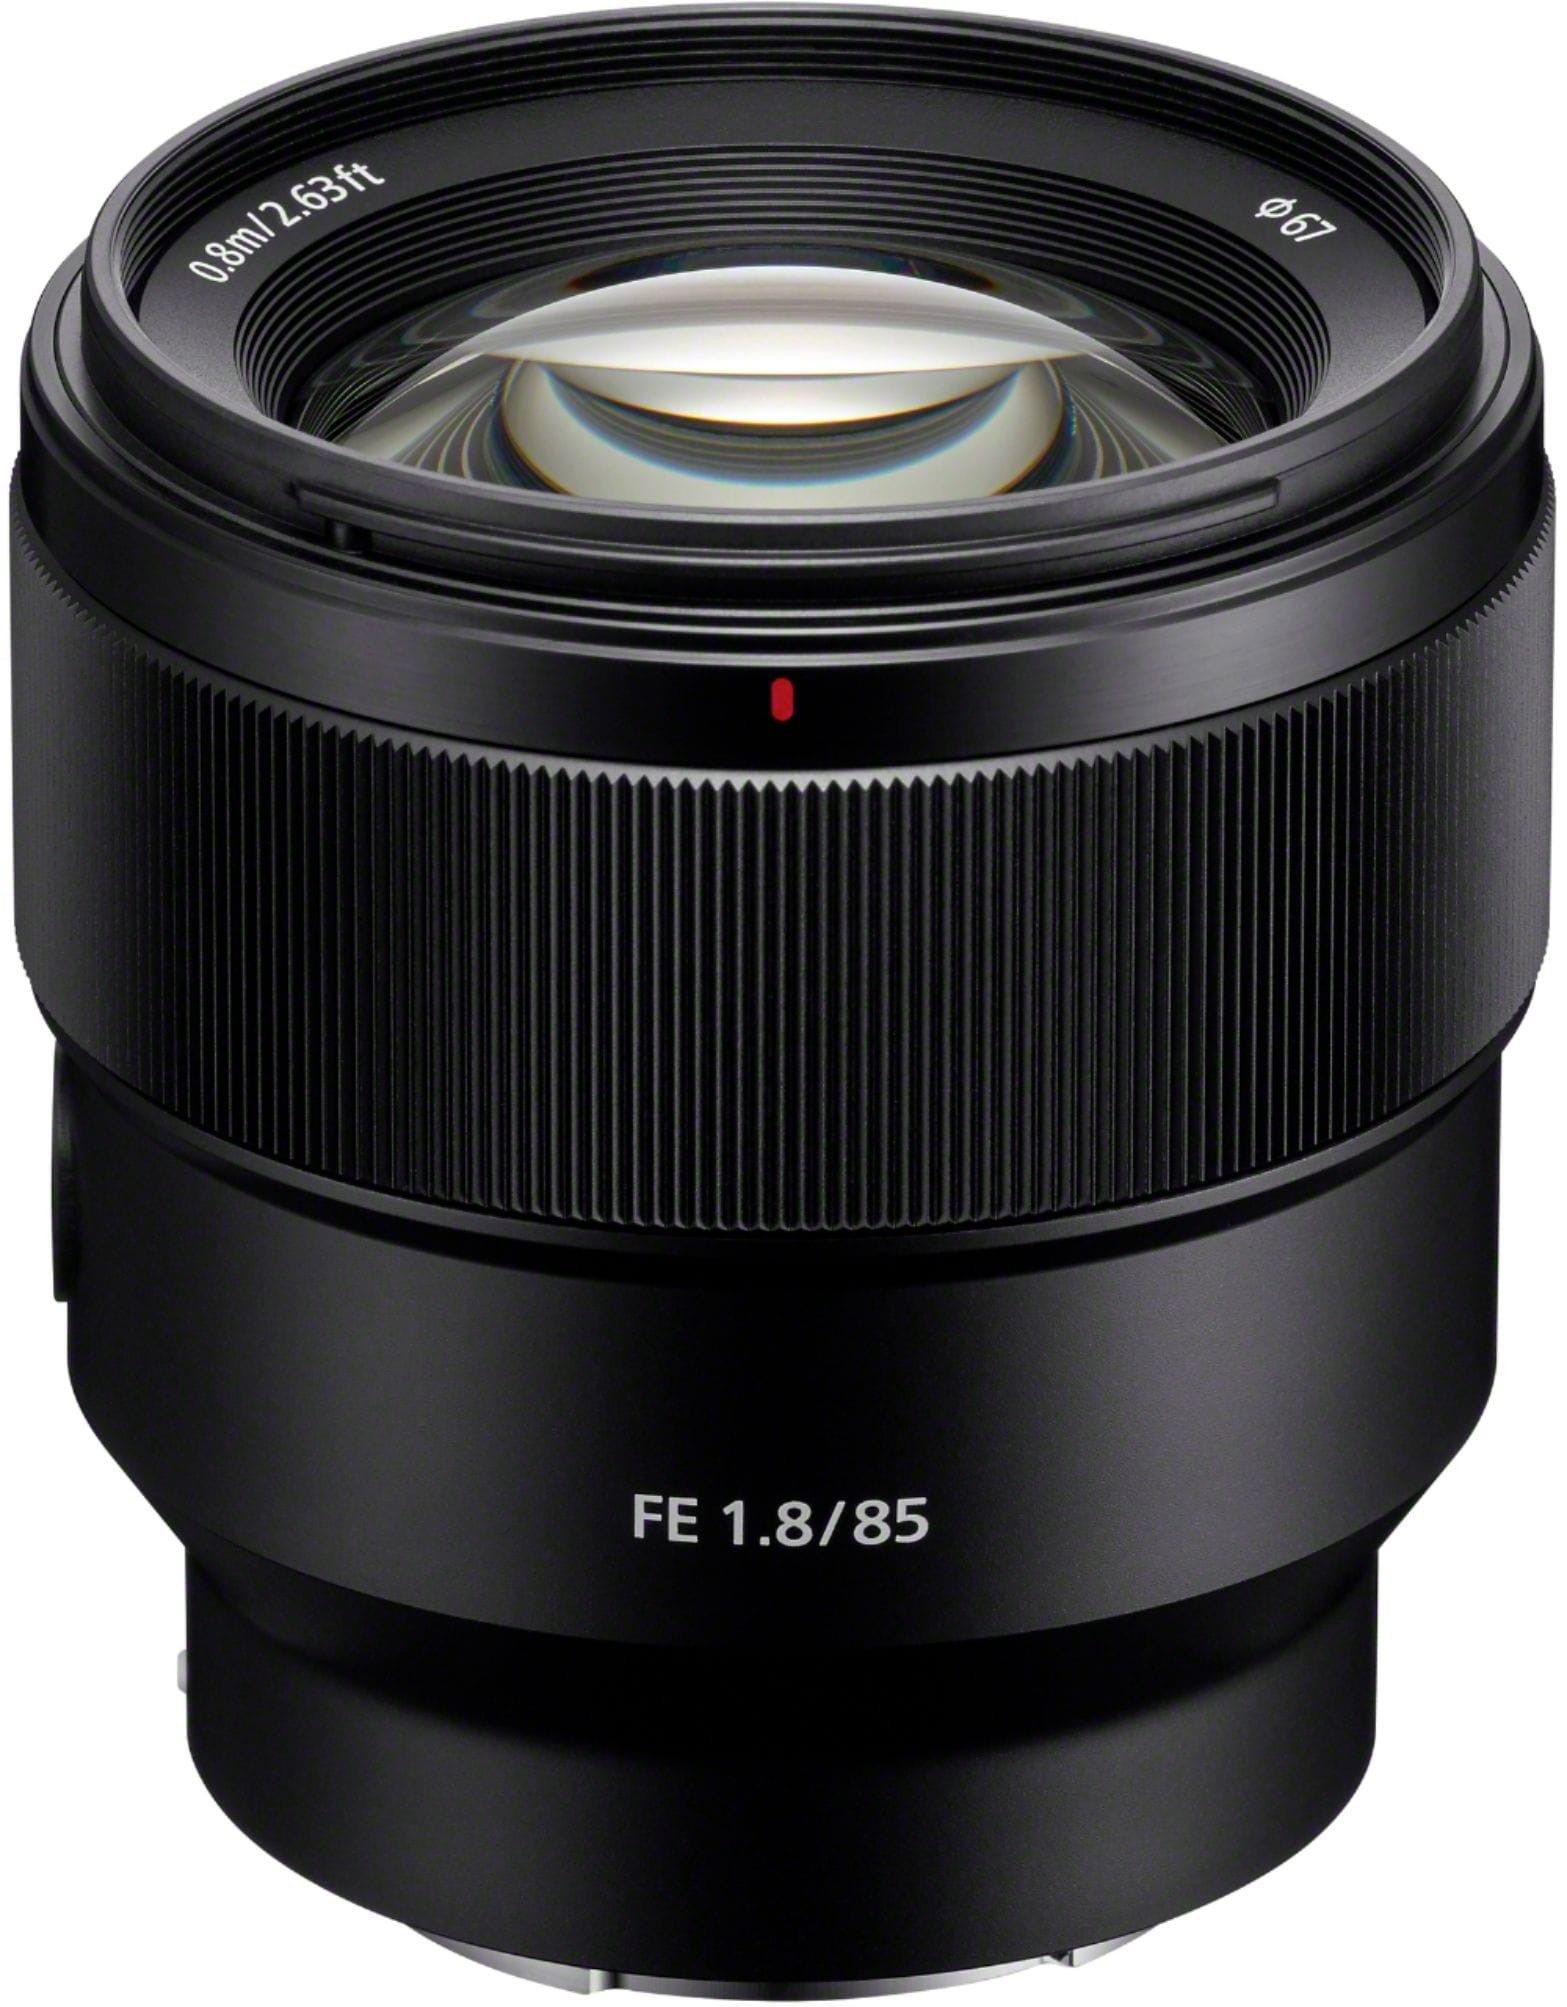 Sony FE 85mm f/1.8 Telephoto Prime Lens for E-mount Cameras SEL85F18/2 - Best Buy | Best Buy U.S.